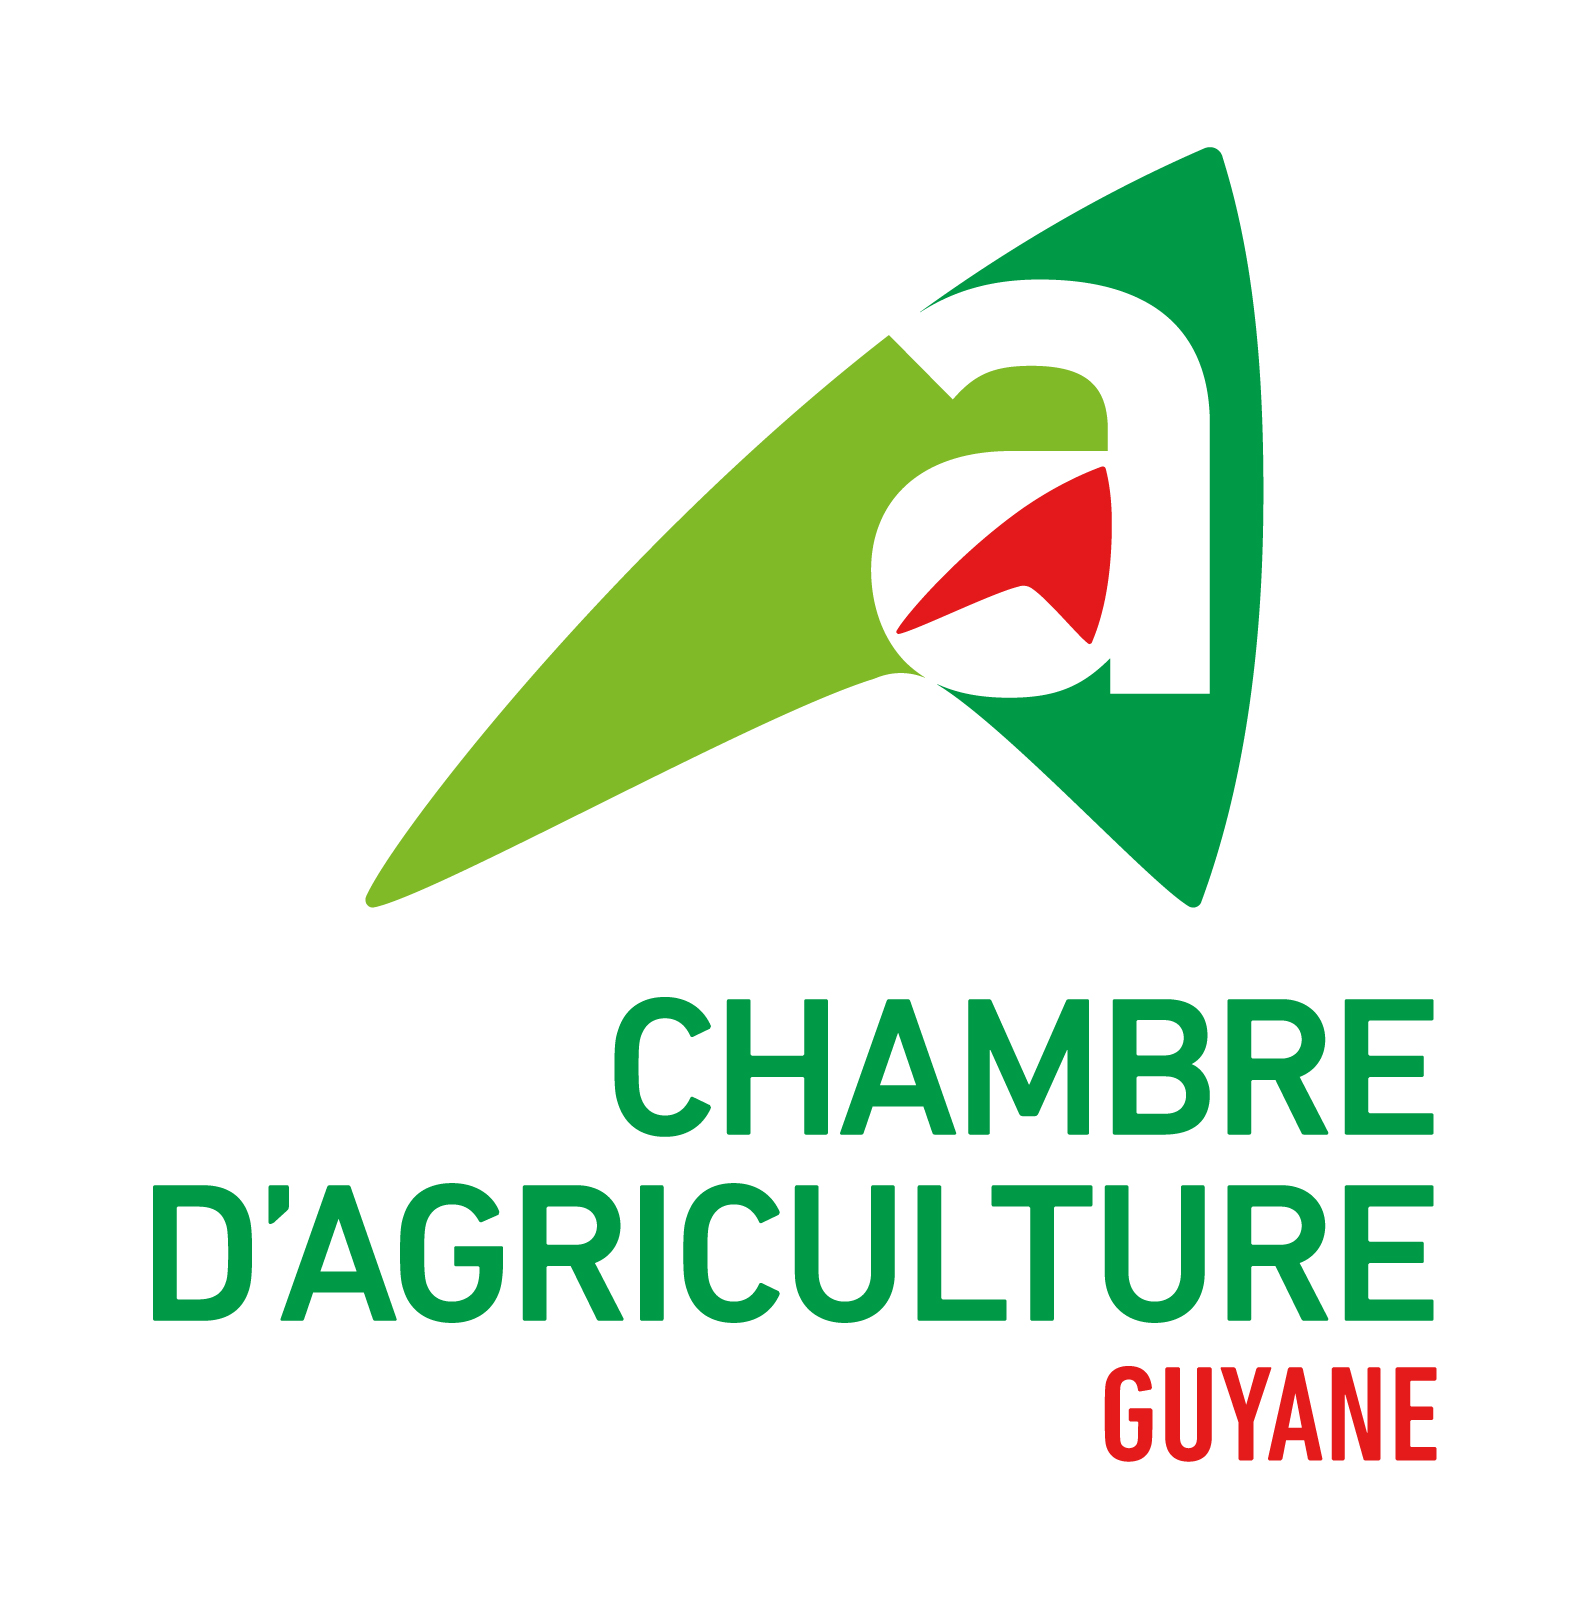 Chambre d'agriculture de Guyane, retour à la page d'accueil